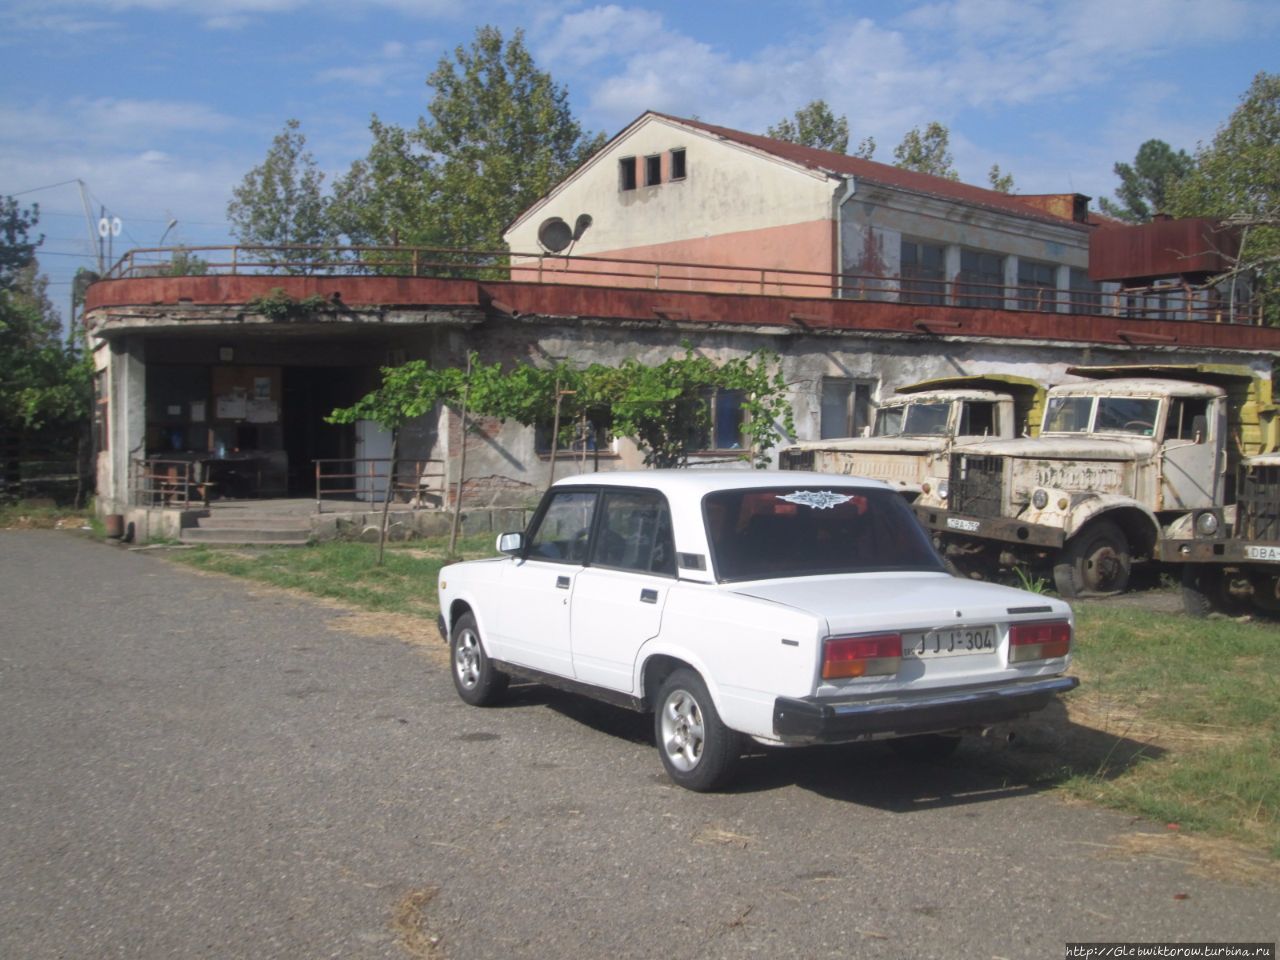 Прогулка по Кутаиси — среди грузовиков и по дворикам Кутаиси, Грузия